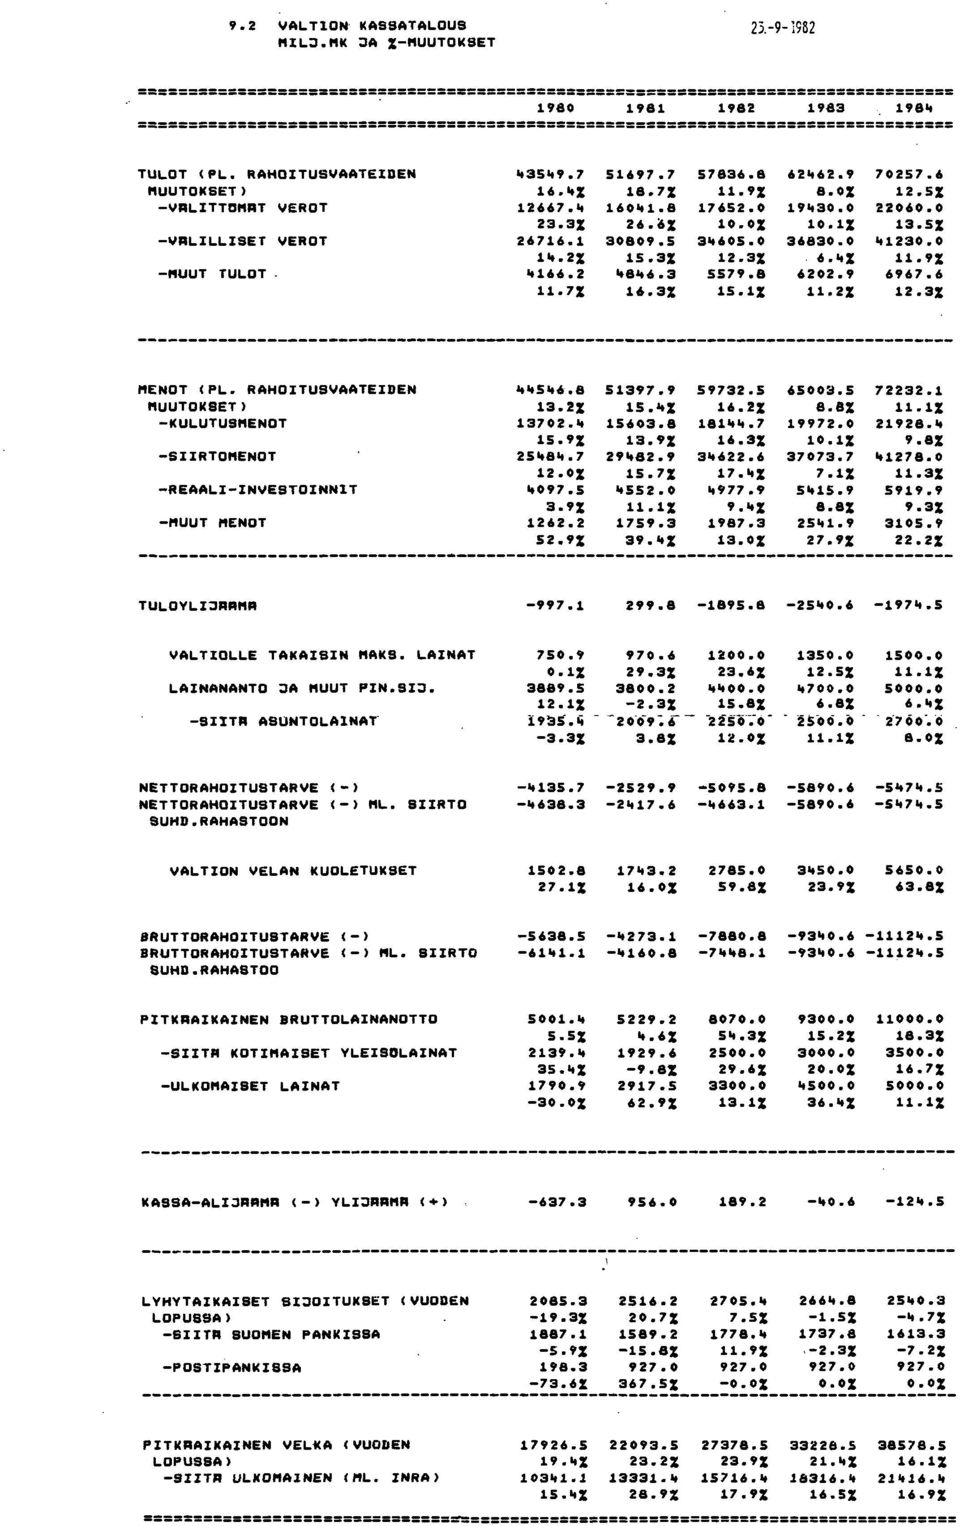 "% 6202.9 11.2% 70257.6 12.5% 2206 13.5% "123 11.9% 6967.6 12.3% MENOT (PL. RAHOITUS"AATEIDEN MUUTOKSET) KULUTUSMENOT REAALIIN"ESTOINNIT ""5"6.8 13.2% 13702.11 15.9% 25"8".7 12.0% "097.5 3.9% 1262.